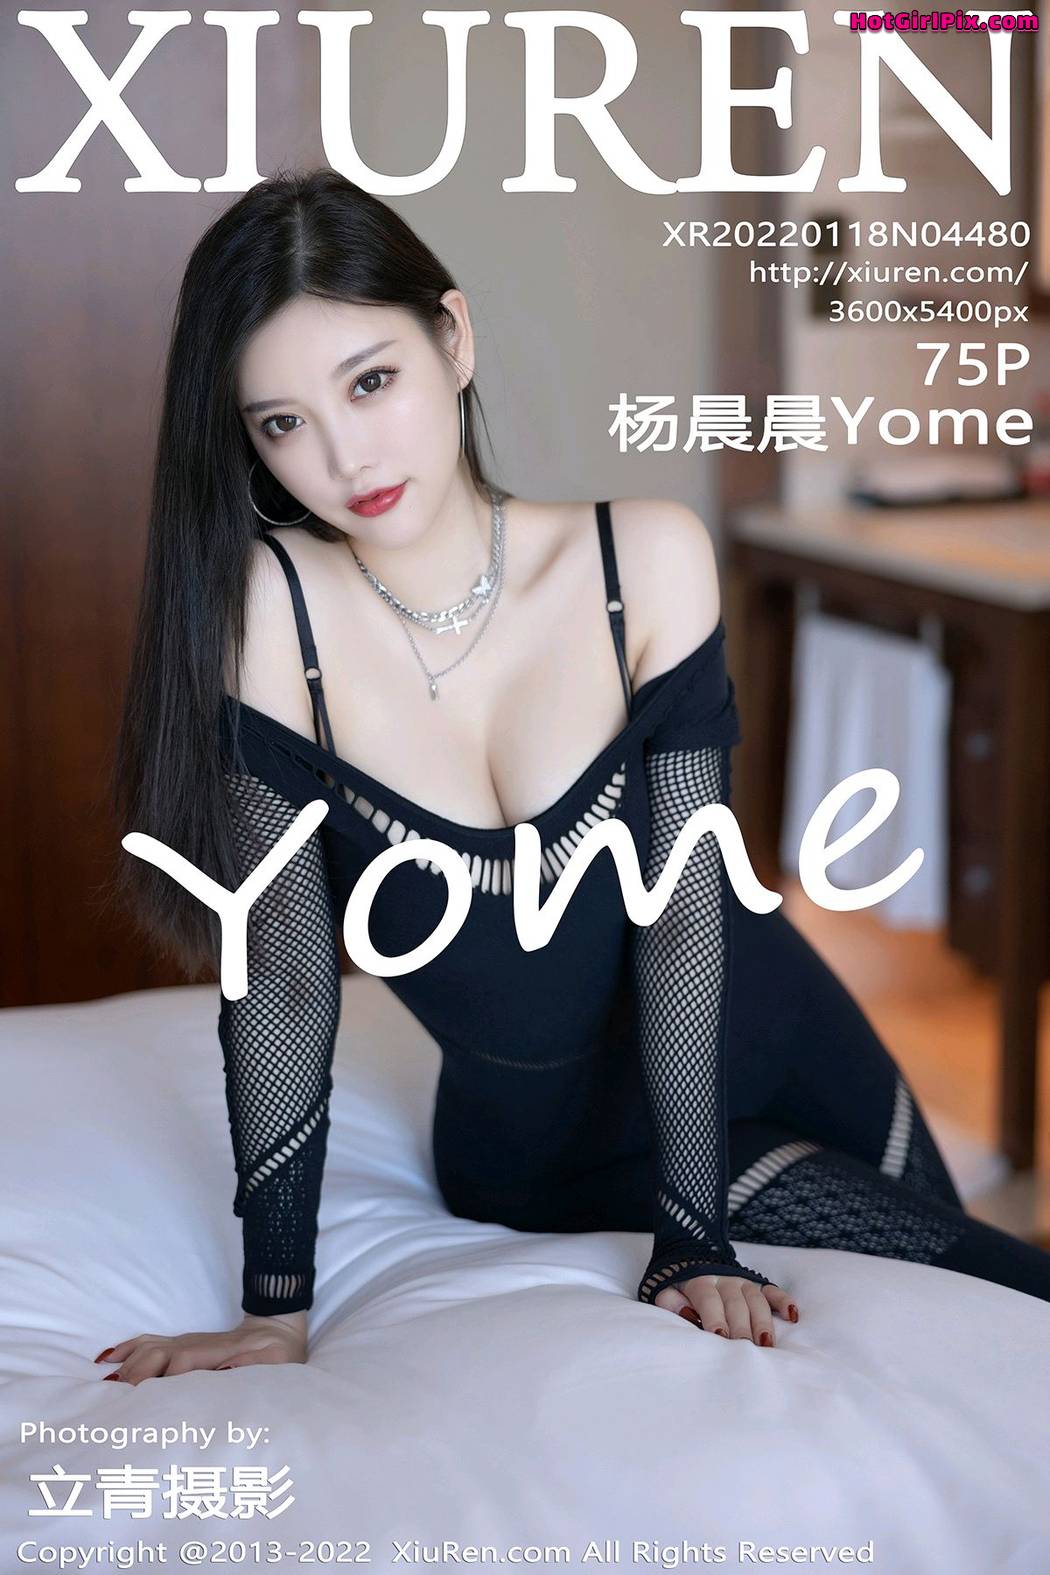 [XIUREN] No.4480 Yang Chen Chen 杨晨晨Yome (Yang Chen Chen 杨晨晨sugar) Cover Photo